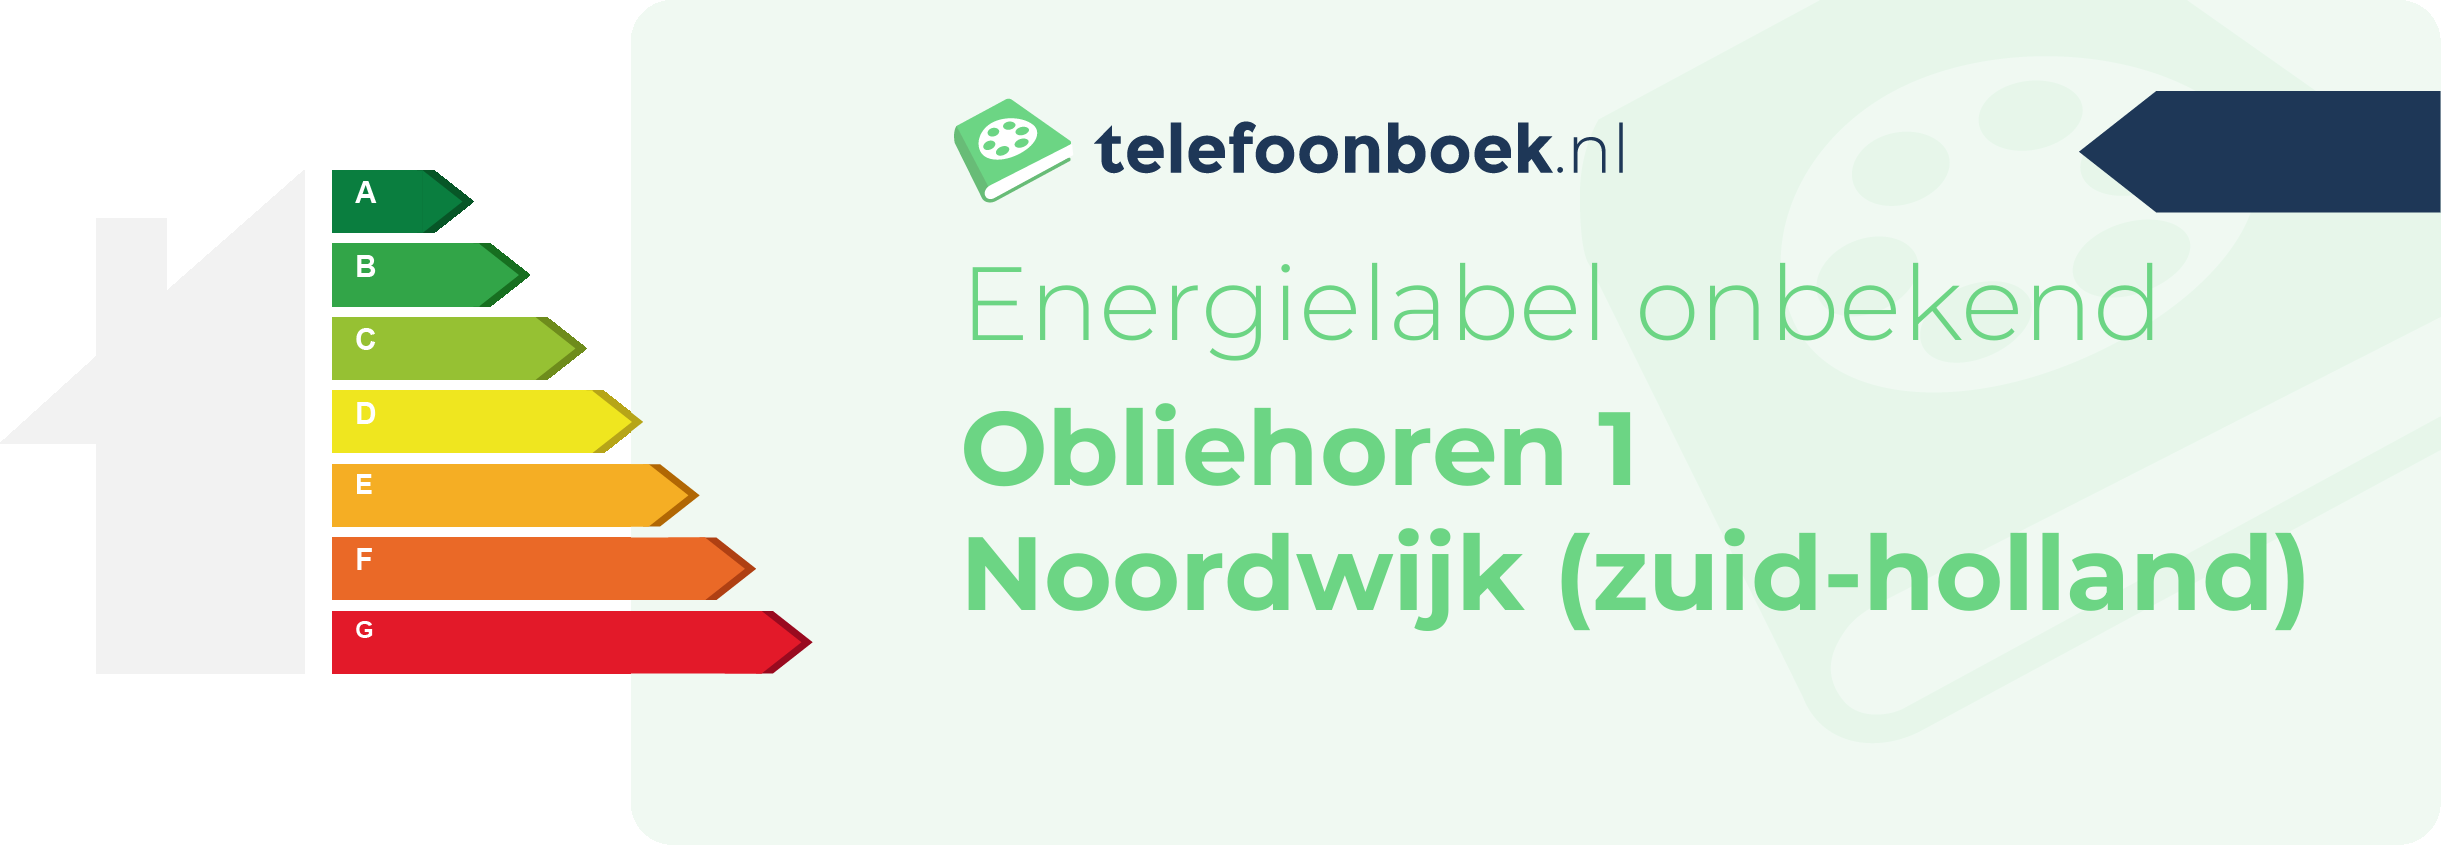 Energielabel Obliehoren 1 Noordwijk (Zuid-Holland)